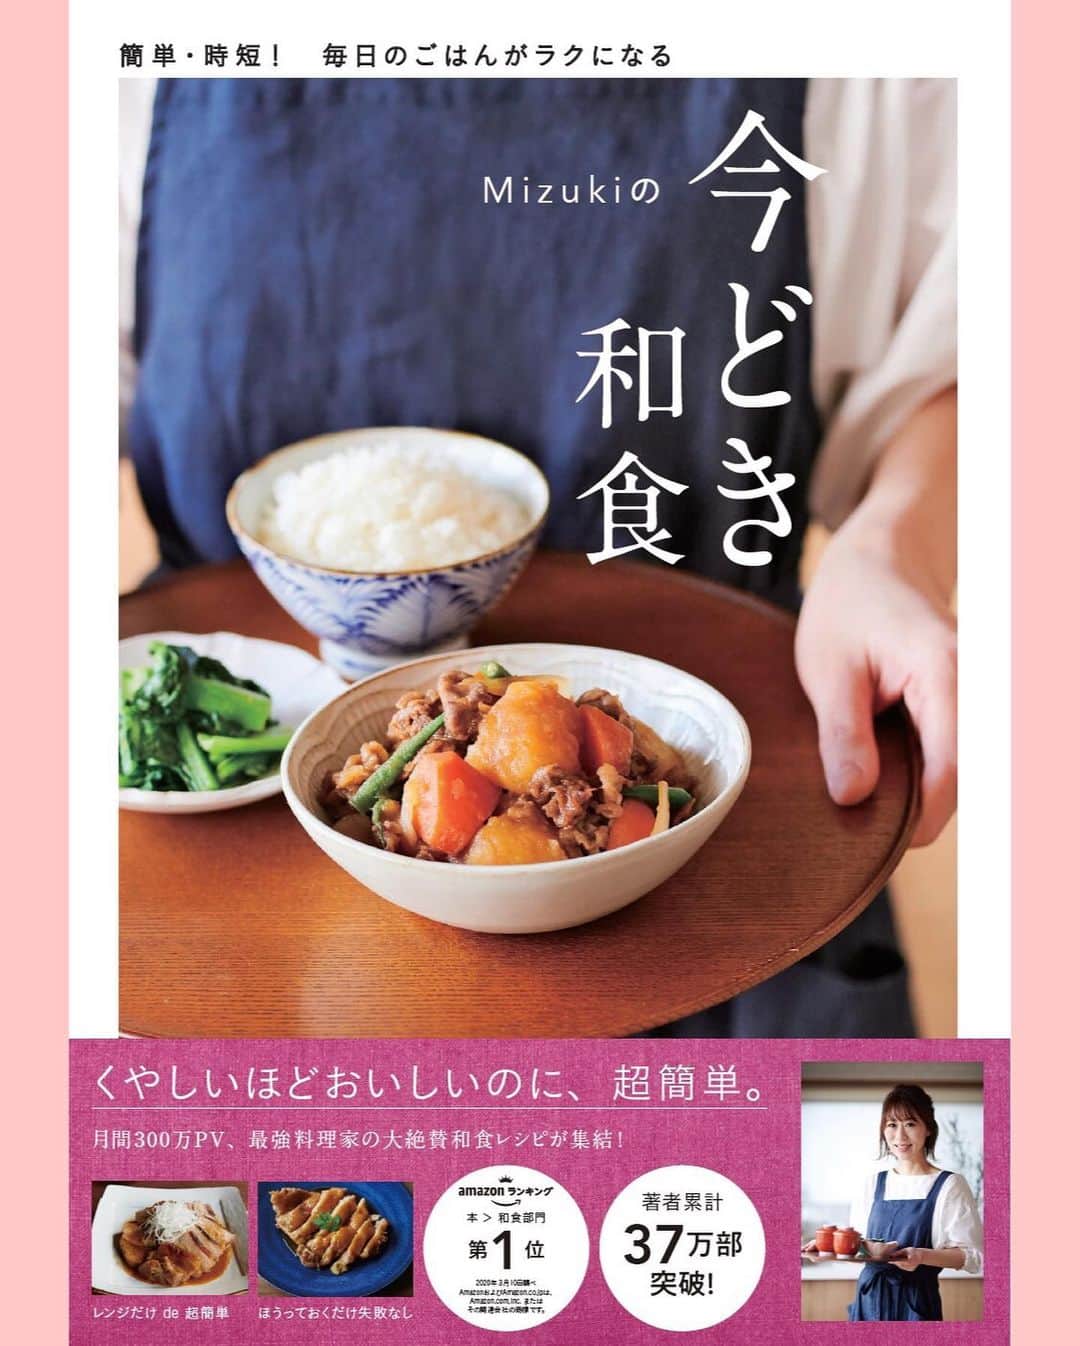 Mizuki【料理ブロガー・簡単レシピ】さんのインスタグラム写真 - (Mizuki【料理ブロガー・簡単レシピ】Instagram)「・﻿ 【レシピ】ーーーーーーー﻿ ♡絶品！おうちつけ麺♡﻿ ーーーーーーーーーーーー﻿ ﻿ ﻿ おはようございます(*^^*)﻿ ﻿ 今日は気軽に楽しめる﻿ #つけ麺 のご紹介です♩﻿ おうちにある材料だけで﻿ 絶品のつけ汁ができますよ〜♡﻿ もちろん、難しいこと一切なしの﻿ 超簡単レシピです(*´艸`)﻿ ﻿ 今回は中華麺を使用しましたが﻿ うどんやそうめんにも合うので﻿ よかったらお試し下さいね♩﻿ これ、おすすめです♡♡﻿ ﻿ ﻿ ﻿ ーーーーーーーーーーーーーーーーーーーー﻿ 【2人分】﻿ 中華麺...2玉﻿ 豚バラ薄切り肉...100g﻿ 長ねぎ...20cm﻿ ごま油...小2﻿ ●水...400ml﻿ ●鶏がらスープ・醤油...各大1﻿ ●みりん・オイスターソース...各小1﻿ ●にんにく・生姜...各チューブ2cm﻿ (あれば)ゆで卵・きざみ海苔...各適量﻿ ﻿ 1.豚肉は3cm長さに切る。長ねぎは斜め薄切りにする。中華麺は袋の表示通りに茹で、冷水で冷やして水気を切る。﻿ 2.鍋にごま油を入れて中火で熱し、豚肉と長ねぎを炒める。豚肉の色が変わったら、●を加えて一煮立ちさせる。﻿ 3.器に中華麺を盛り、ゆで卵と海苔をトッピングする。別の器に2を盛り付けて添える。﻿ ーーーーーーーーーーーーーーーーーーーー﻿ ﻿ ﻿ ﻿ 《ポイント》﻿ ♦︎中華麺の他、うどんやそうめんで作っても♩﻿ ♦︎麺と一緒に、茹でたキャベツやもやしを添えるとボリュームアップできます♩﻿ ﻿ ﻿ ﻿ ﻿ ﻿ ﻿ ﻿ 🔻入荷しました🔻﻿ ＿＿＿＿＿＿＿＿＿＿＿＿＿＿＿＿＿＿＿﻿ 📕\ \ 新刊発売中 / /📕﻿ 簡単・時短！ 毎日のごはんがラクになる﻿ ✨🦋 【 #Mizukiの今どき和食 】🦋✨﻿ ＿＿＿＿＿＿＿＿＿＿＿＿＿＿＿＿＿＿＿﻿ ﻿ なるべく少ない材料で﻿ 手間も時間も省きながら﻿ 簡単にできるおいしい和食レシピ♩﻿ 簡単に失敗なくマスターできる一冊で﻿ もっと気軽に、カジュアルに﻿ 和食を楽しんで下さいね(*^^*)﻿ ﻿ ﻿ ーーー ⭐️PART.1 メインおかず ⭐️ーーー﻿ 素材別にレシピをご紹介しています♩﻿ 和食の定番から新定番まで﻿ どれも押さえておきたいメニューばかり。﻿ 肉じゃがはフライパンで！焼き豚はレンジで！﻿ ぶり大根は切り身を使って手軽に作ります♩﻿ ﻿ ーーー ☘️PART.2 サブおかず ☘️ーーー﻿ 年中手に入るお手頃野菜と﻿ 乾物や大豆、こんにゃくなどを使った﻿ 副菜レシピをたっぷり掲載！！﻿ 普段SNSではメインおかずばかりなので﻿ 本では副菜にも力を入れています(*^^*)﻿ ﻿ ーーー 🌸PART.3 ごはんと汁物 🌸ーーー﻿ ささっと作れる丼と麺、﻿ みんなで食べたいいなり寿司や﻿ 手巻きごはんもご紹介！﻿ 複数の炊き込みごはんと﻿ 味噌汁&和風スープも盛りだくさん！﻿ ﻿ ﻿ 各レシピのポイントは﻿ 【写真付きで丁寧に解説】﻿ 副菜レシピもたっぷりなので﻿ 【メインページに副菜メモもつけました】﻿ ＊このメインにはこの副菜が合いますよ〜﻿ という献立の提案です(*^^*)﻿ 【その他コラムも充実】﻿ 全127品中ほぼ全て﻿ 【本だけのレシピです！】﻿ ﻿ ＿＿＿＿＿＿＿＿＿＿＿＿＿＿＿＿＿＿＿﻿ ﻿ ⭐️ストーリー、ハイライト、プロフ画面に﻿ 本のURLを貼らせていただいております♩﻿ →(@mizuki_31cafe )﻿ ﻿ ﻿ ﻿ ﻿ ﻿ ＿＿＿＿＿＿＿＿＿＿＿＿＿＿＿＿＿﻿ ＿＿＿＿＿＿＿＿＿＿＿＿＿＿＿＿＿﻿ 🎀発売中🎀﻿ 【#ホットケーキミックスのお菓子 】﻿ ﻿ 一冊まるっとホケミスイーツ♩﻿ 普段のおやつから﻿ 特別な日にも使えるレシピを﻿ この一冊に詰め込みました(*^^*)﻿ ホットケーキミックスを使えば﻿ 簡単に本格的なお菓子が作れますよ♡﻿ ﻿ 🔹ハイライト、ストーリーに﻿ リンクを貼っています🔹﻿ ＿＿＿＿＿＿＿＿＿＿＿＿＿＿＿＿＿﻿ ＿＿＿＿＿＿＿＿＿＿＿＿＿＿＿＿＿﻿ ﻿ ﻿ ﻿ ﻿ ﻿ #つけ麺#豚バラ#豚肉#ラーメン#長ねぎ#麺﻿ #うちで過ごそう#おうち時間#Mizuki#簡単レシピ#時短レシピ#節約レシピ#料理#レシピ#フーディーテーブル#おうちごはん#おうちカフェ#デリスタグラマー#料理好きな人と繋がりたい#おうちごはんlover#foodpic#follow#cooking#recipe#lin_stagrammer#stayhome#おうちつけ麺m」5月4日 7時37分 - mizuki_31cafe